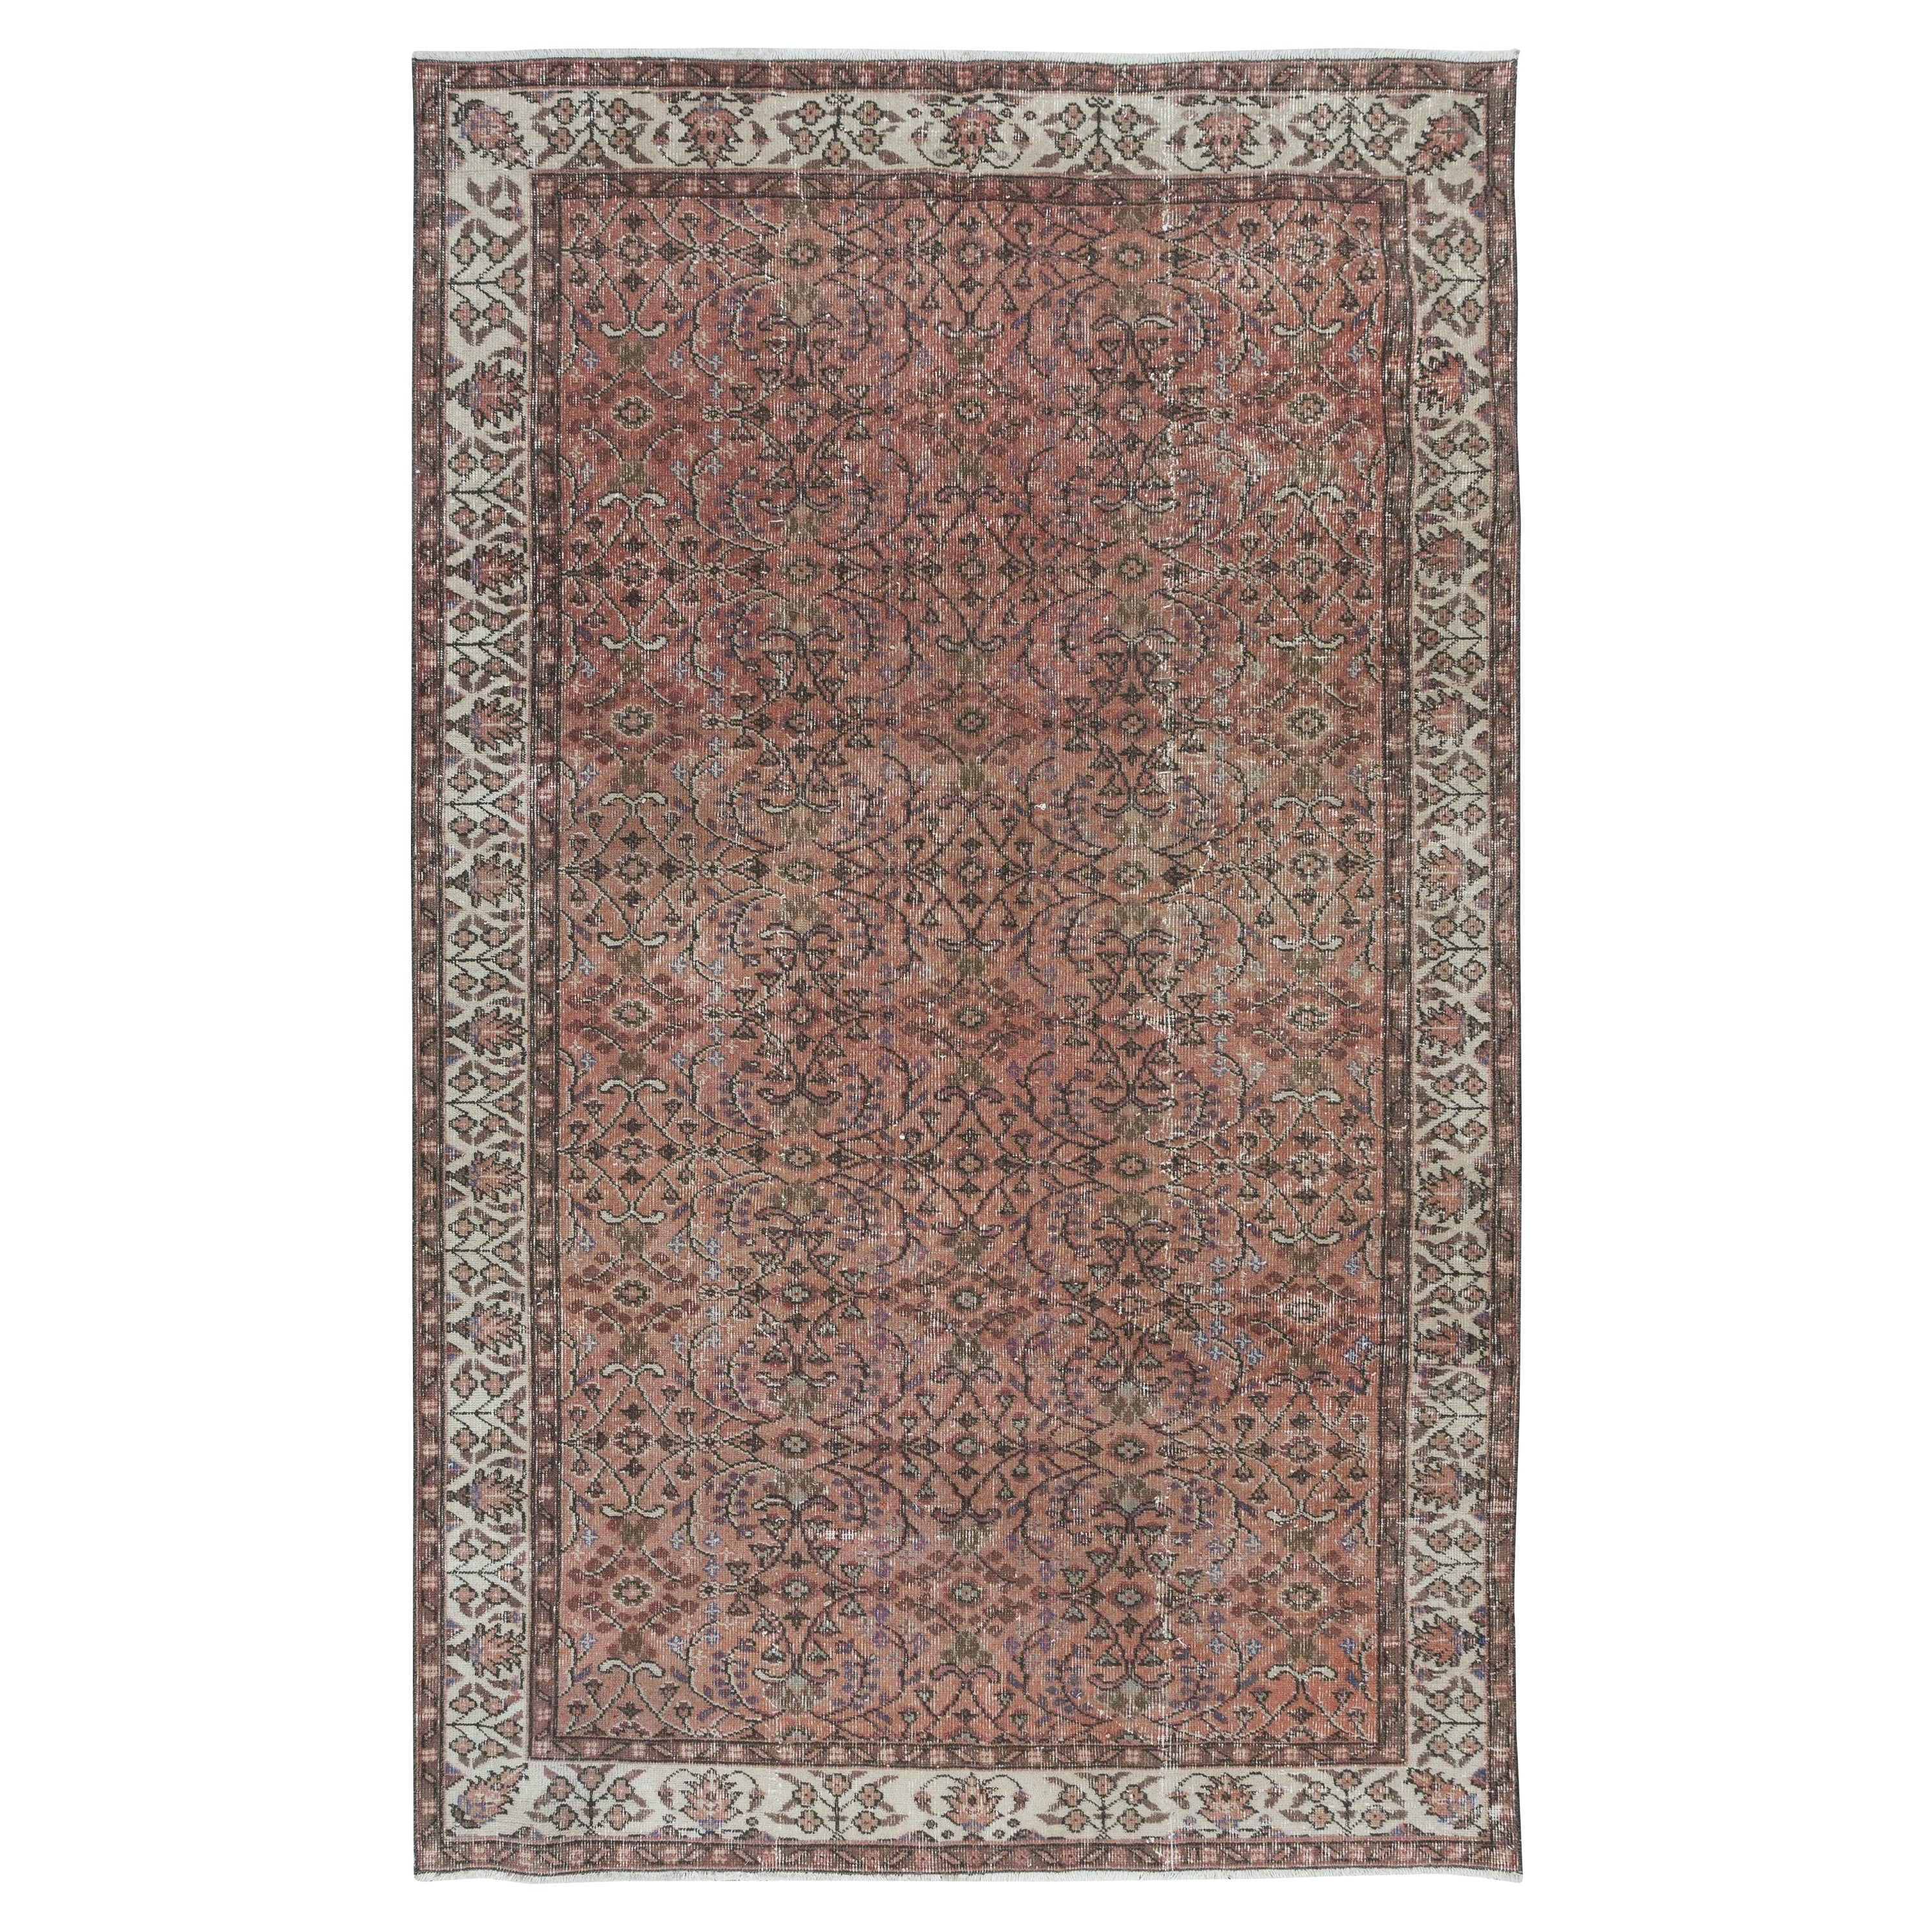 5.4x8.8 Ft Vintage Turkish Area Rug in Red & Beige, Hand Knots Rugs Floral Carpet (tapis floral noué à la main) en vente